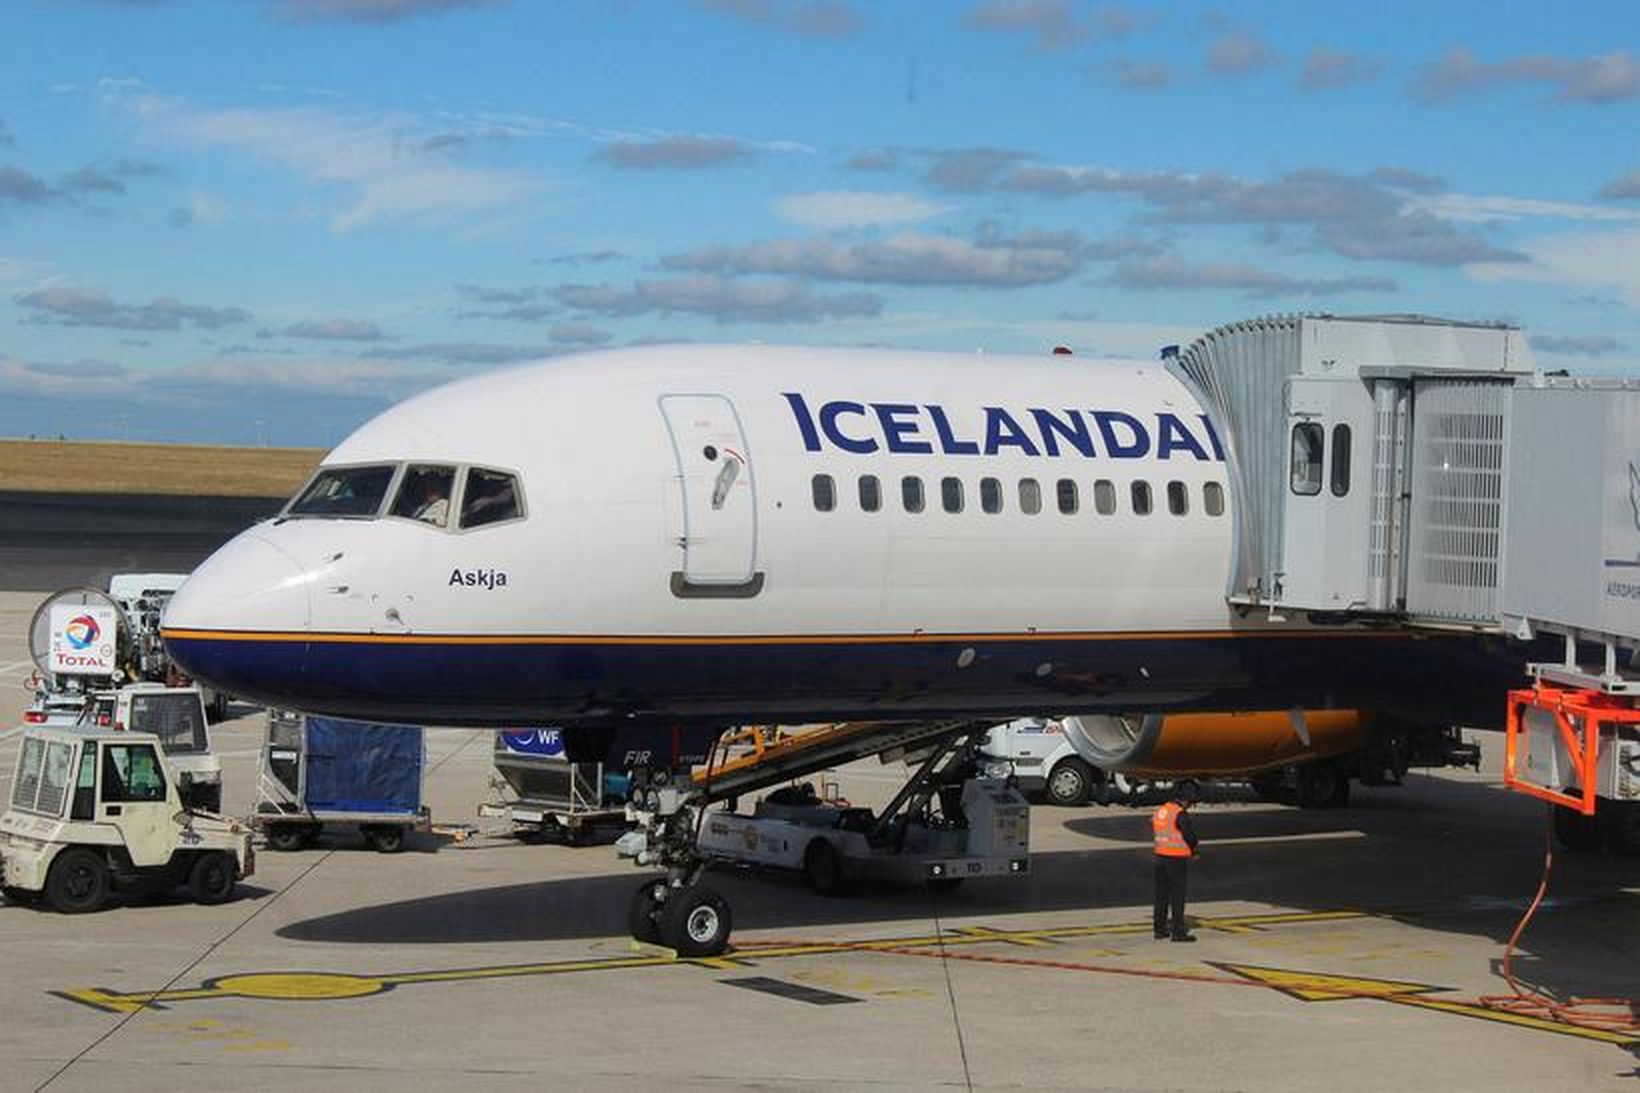 Kjaraviðræður flugmanna og Icelandair var vísað til ríkisáttasemjara.